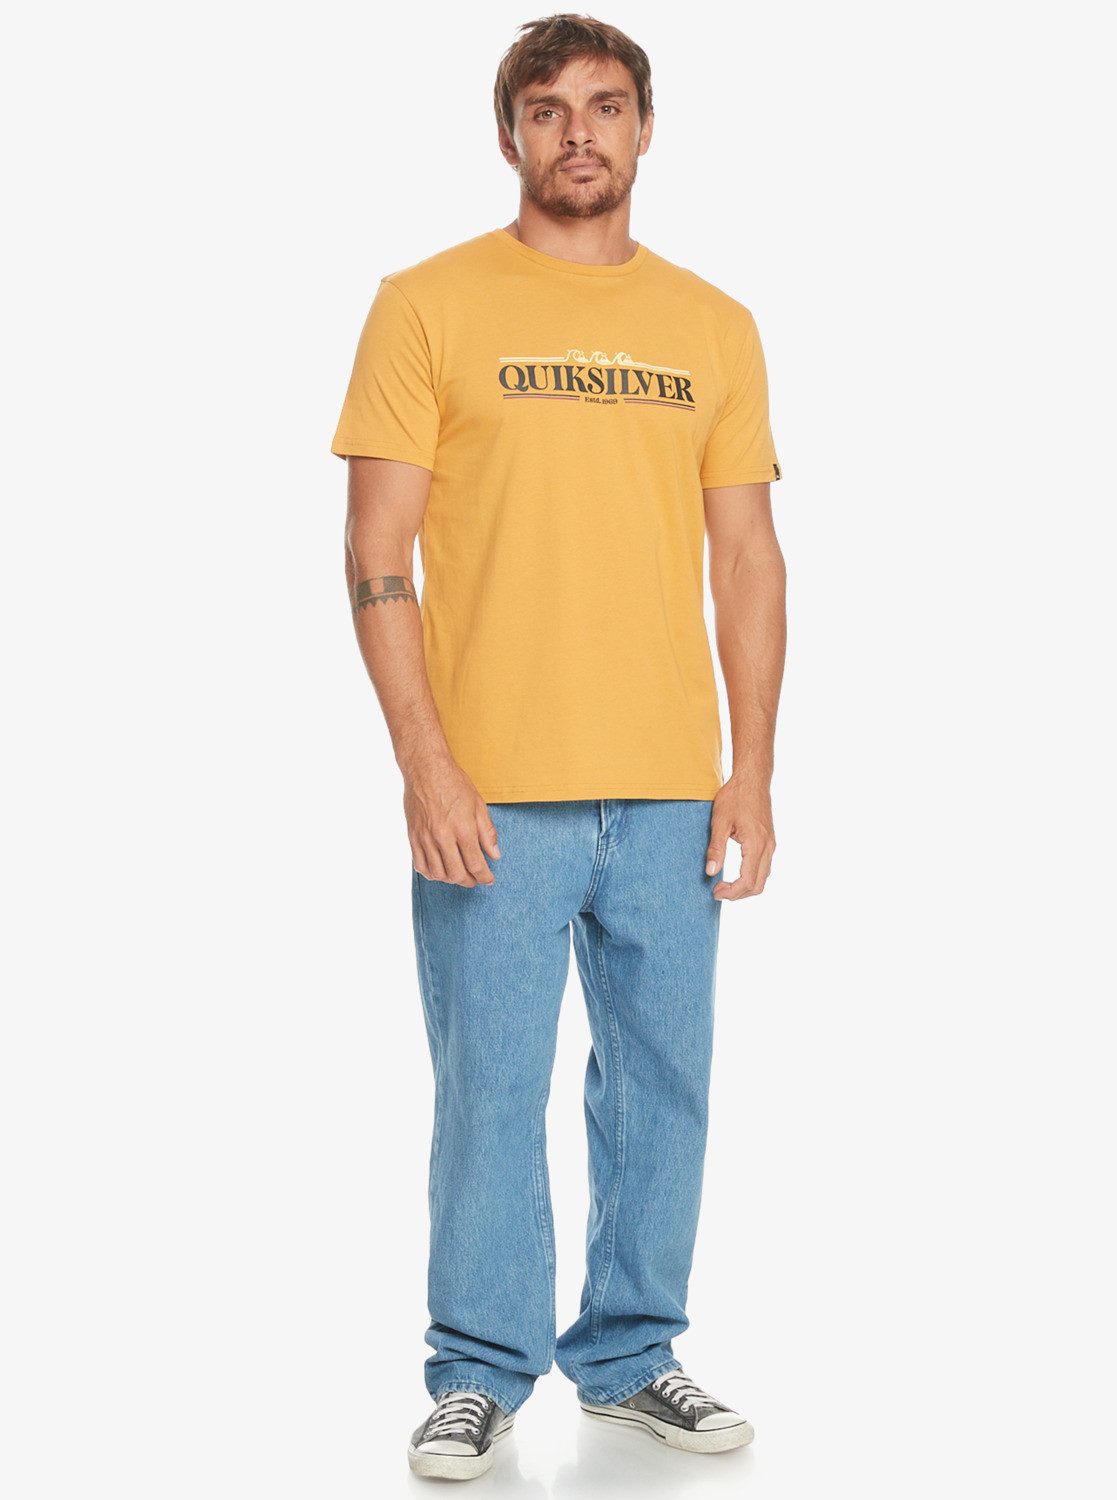 Quiksilver T-Shirt Mustard Gradient Line